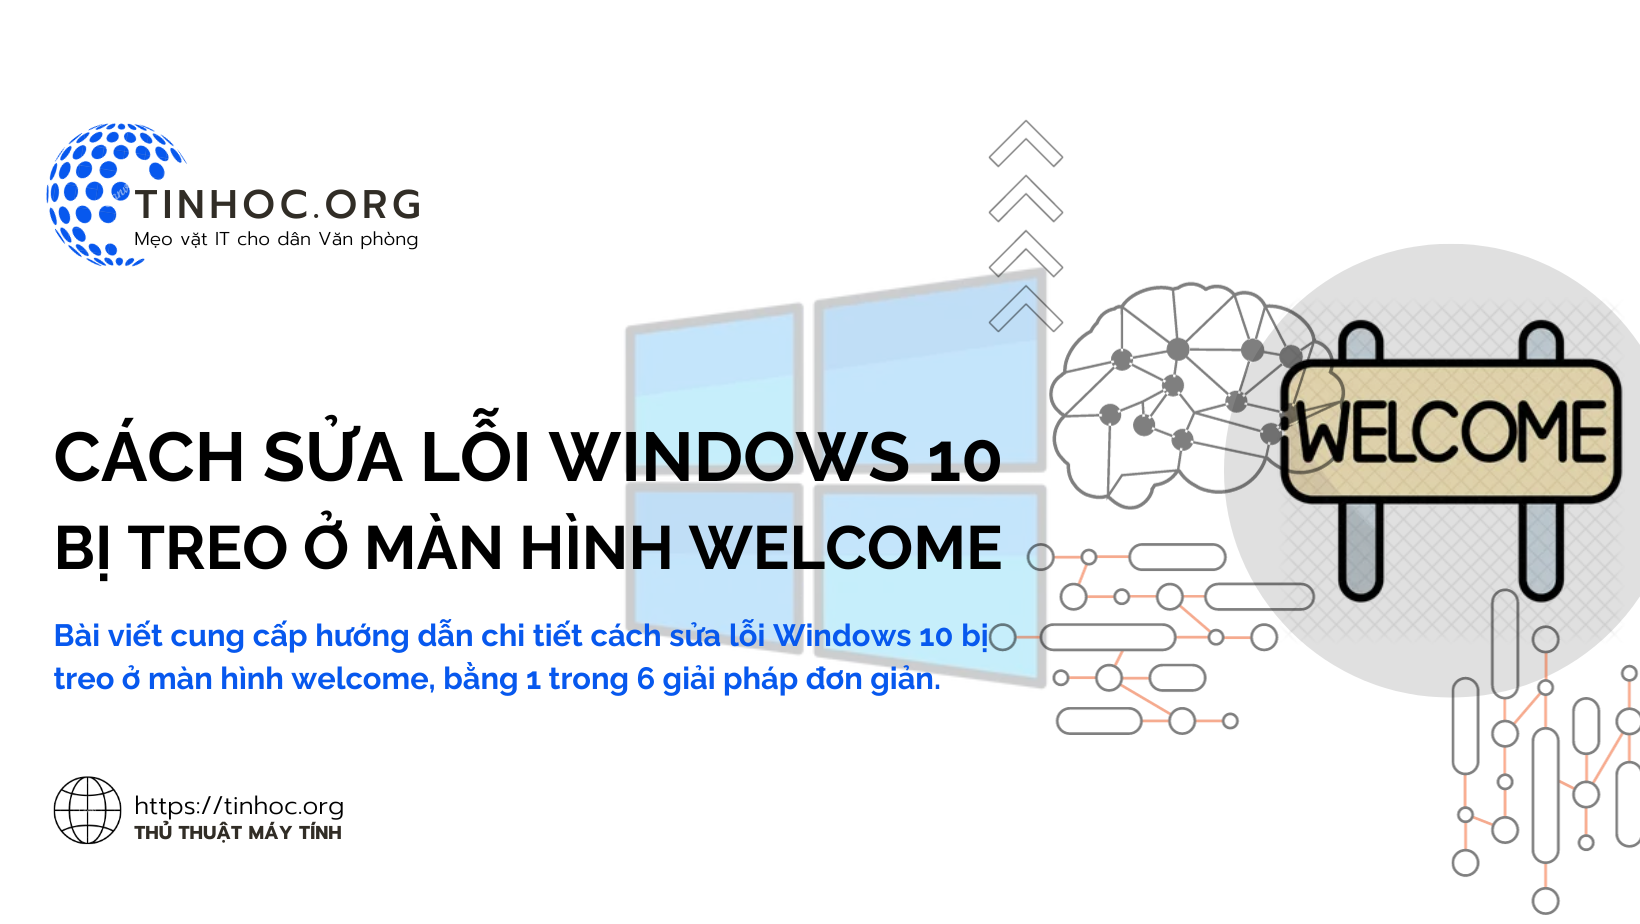 Bài viết cung cấp hướng dẫn chi tiết cách sửa lỗi Windows 10 bị treo ở màn hình welcome, bằng 1 trong 6 giải pháp đơn giản.